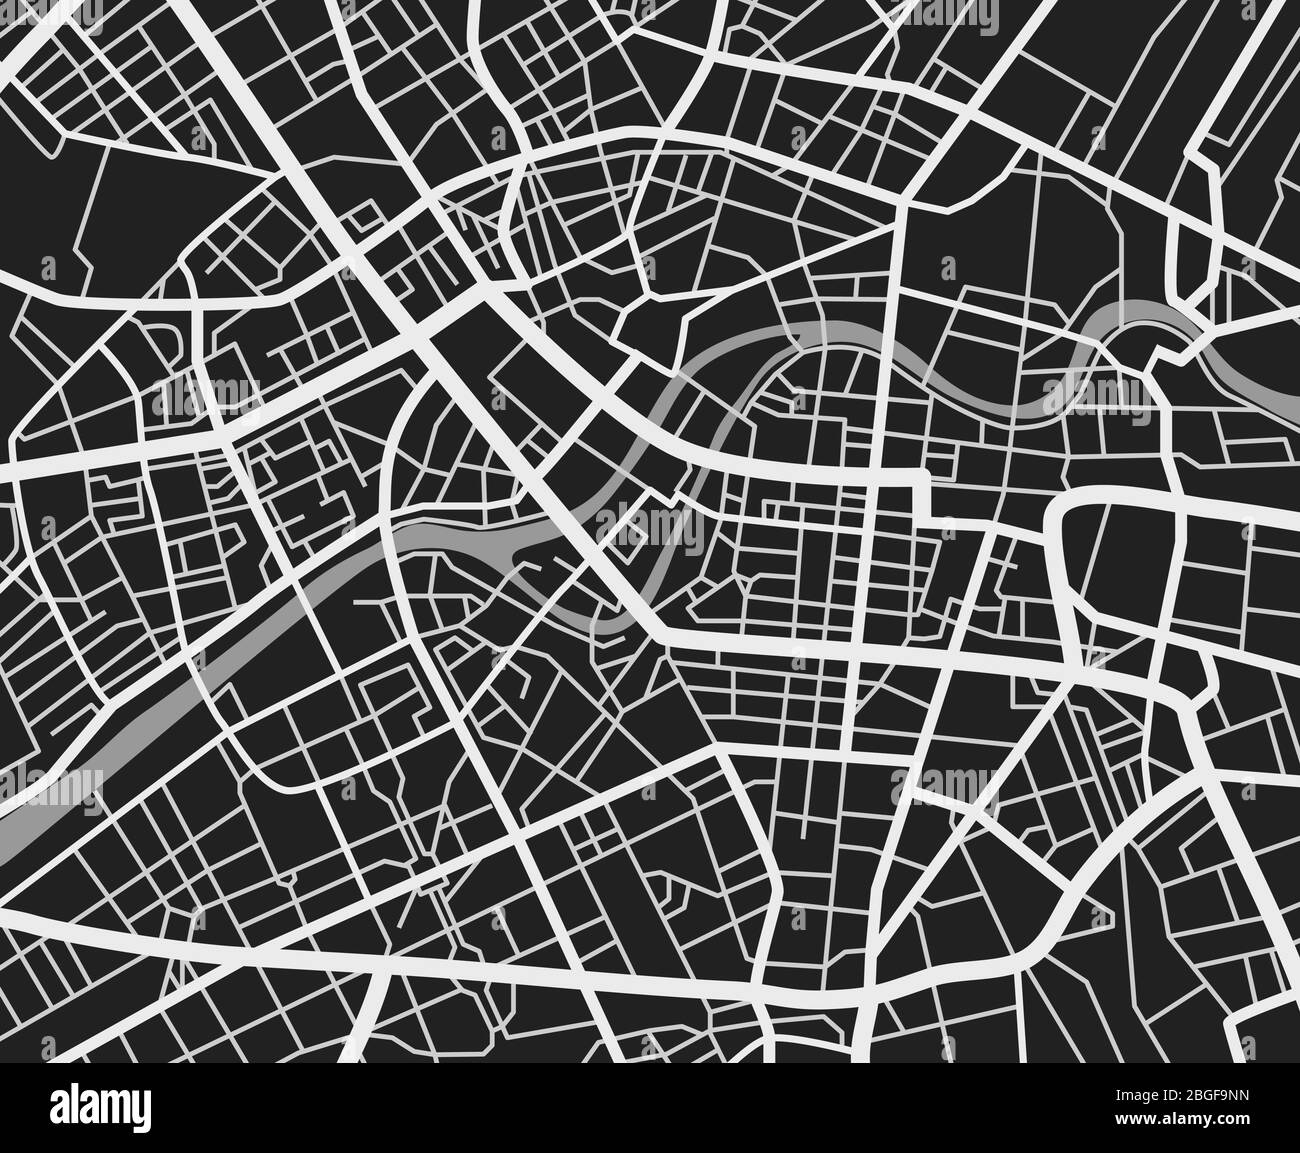 Schwarz-weiß Reise-Stadtplan. Stadtverkehr Straßen Vektor-Kartographie Hintergrund. Stadt Straße Hintergrund, Kartographie Innenstadt, Stadt Navigation Illustration Stock Vektor